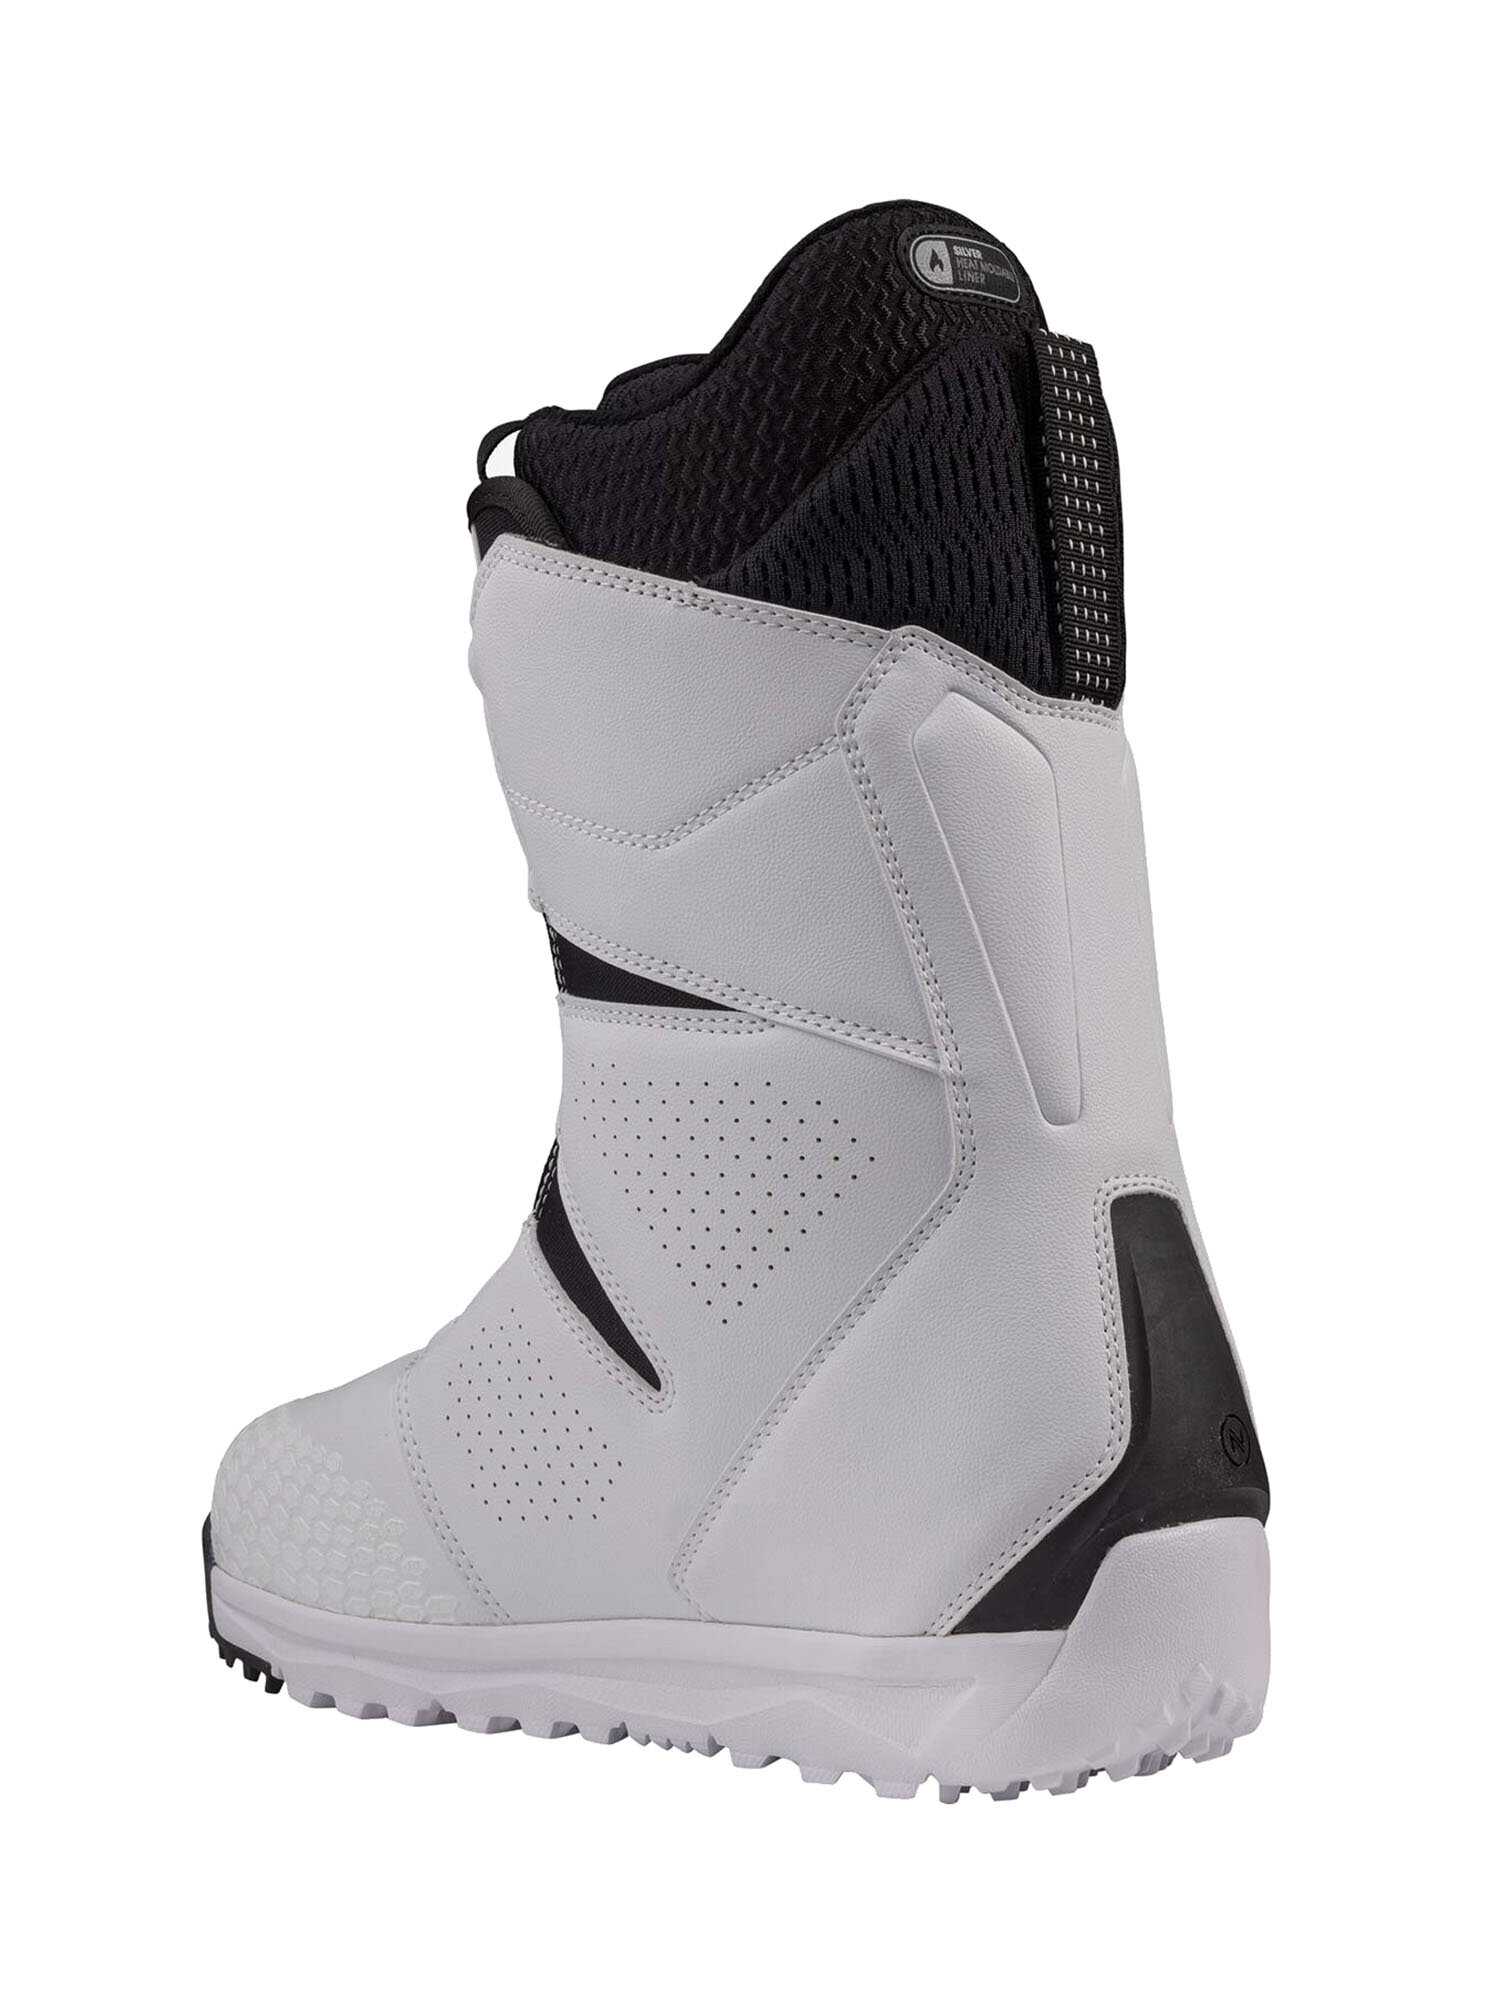 Ботинки для сноуборда NIDECKER Altai White (US:10,5)